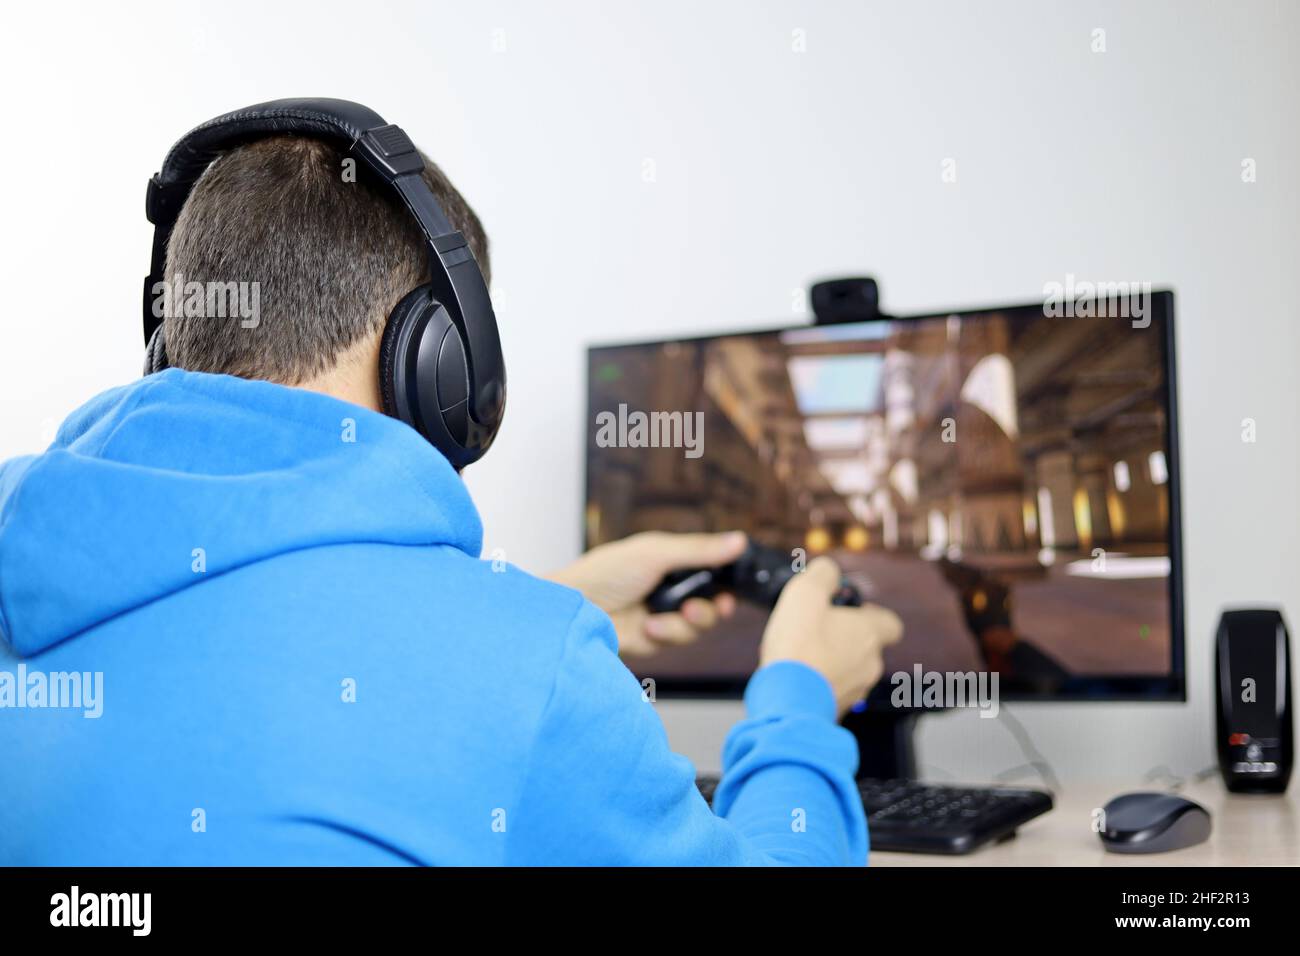 Homme dans un casque jouant avec une manette de jeu un jeu d'ordinateur sur un PC de bureau.Concept de dépendance de jeu, loisirs à la maison Banque D'Images